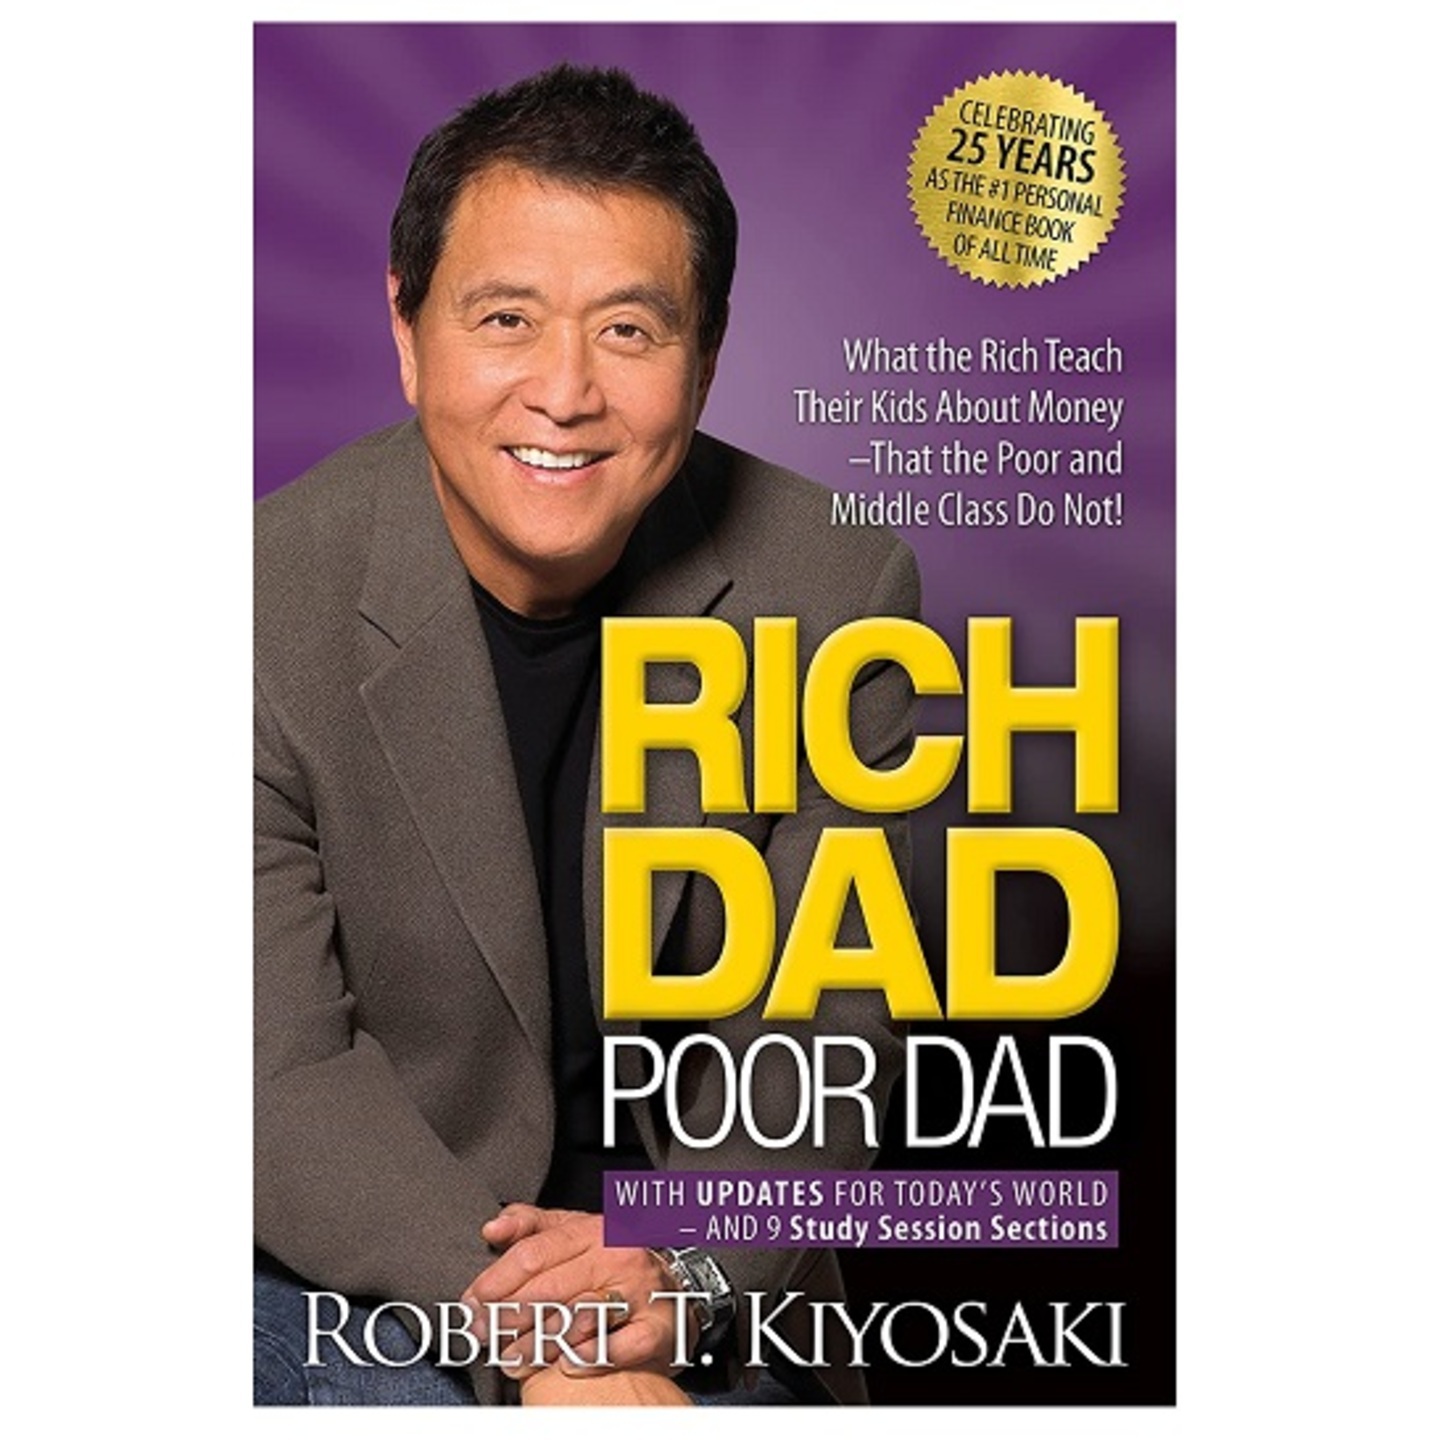 Book Rich Dad Poor Dad 25th Anniversary Edition